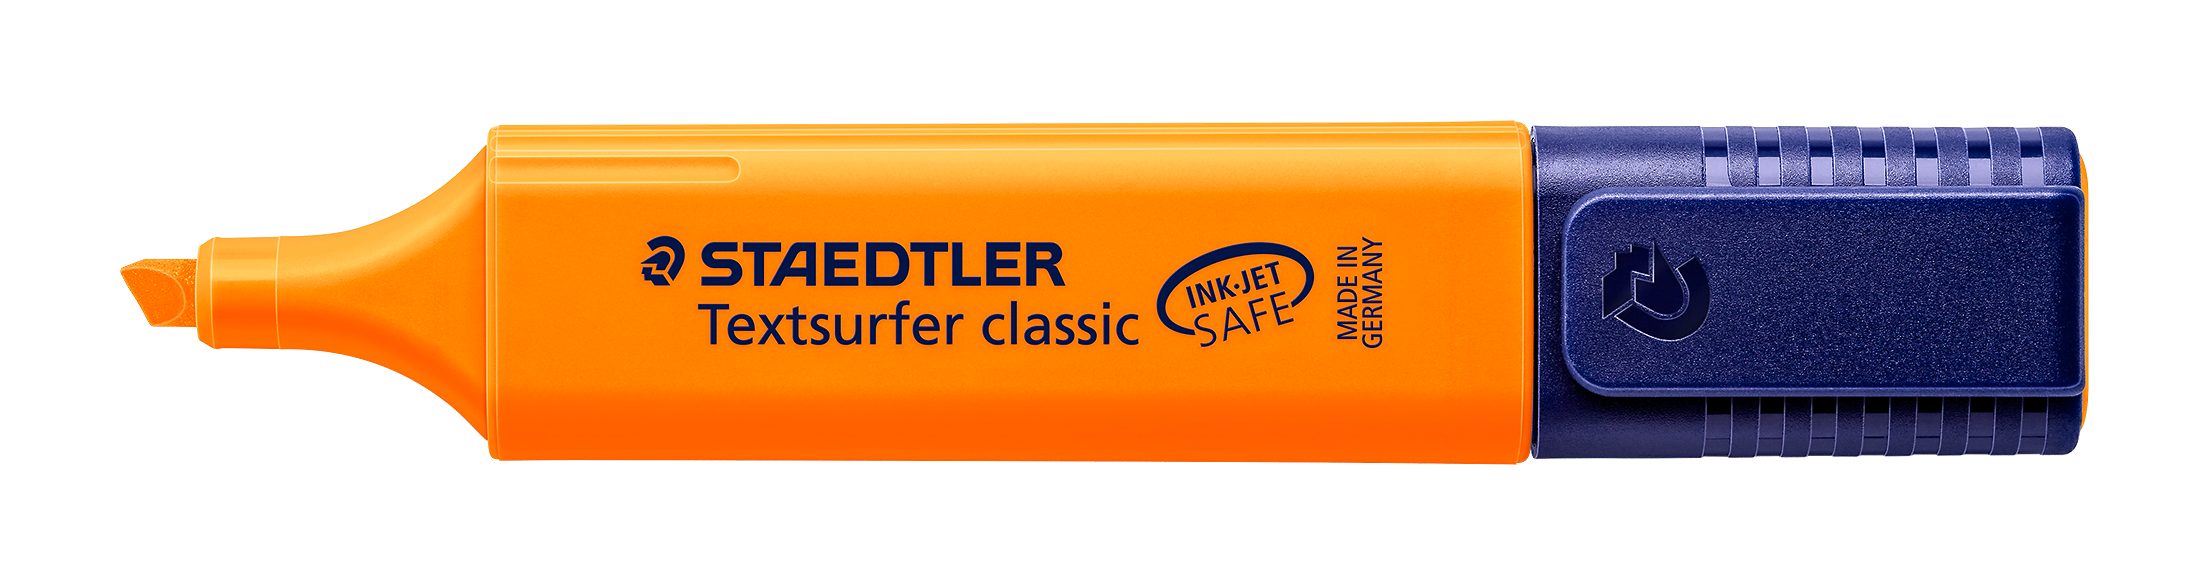 STAEDTLER Marker Staedtler Textsurfer classic orange 364-4 Leuchtstift, INK JET SAFE